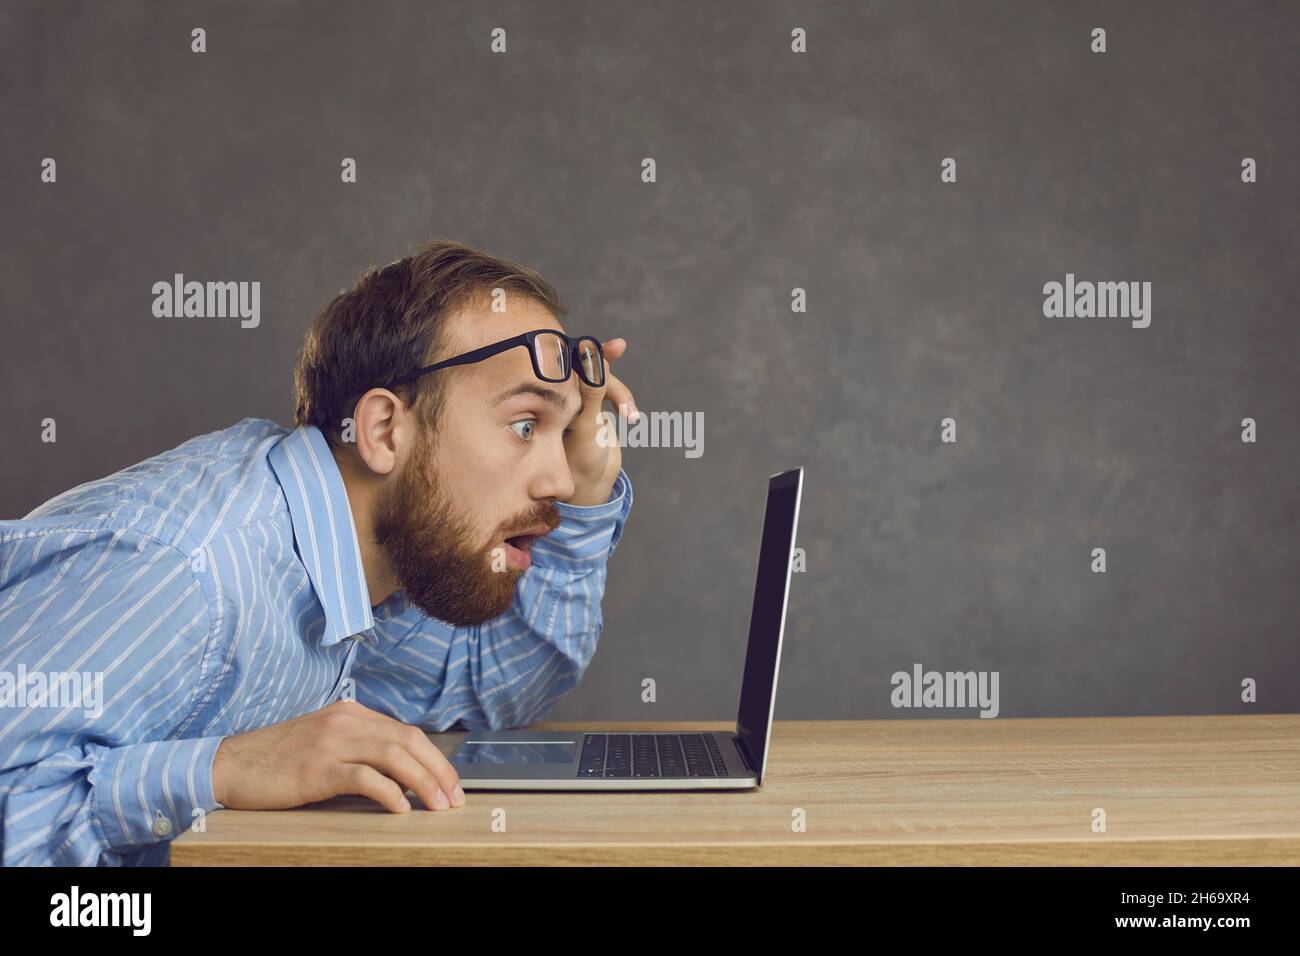 Vue latérale d'un homme avec une expression surprise assis à une table et regardant un écran d'ordinateur portable. Banque D'Images